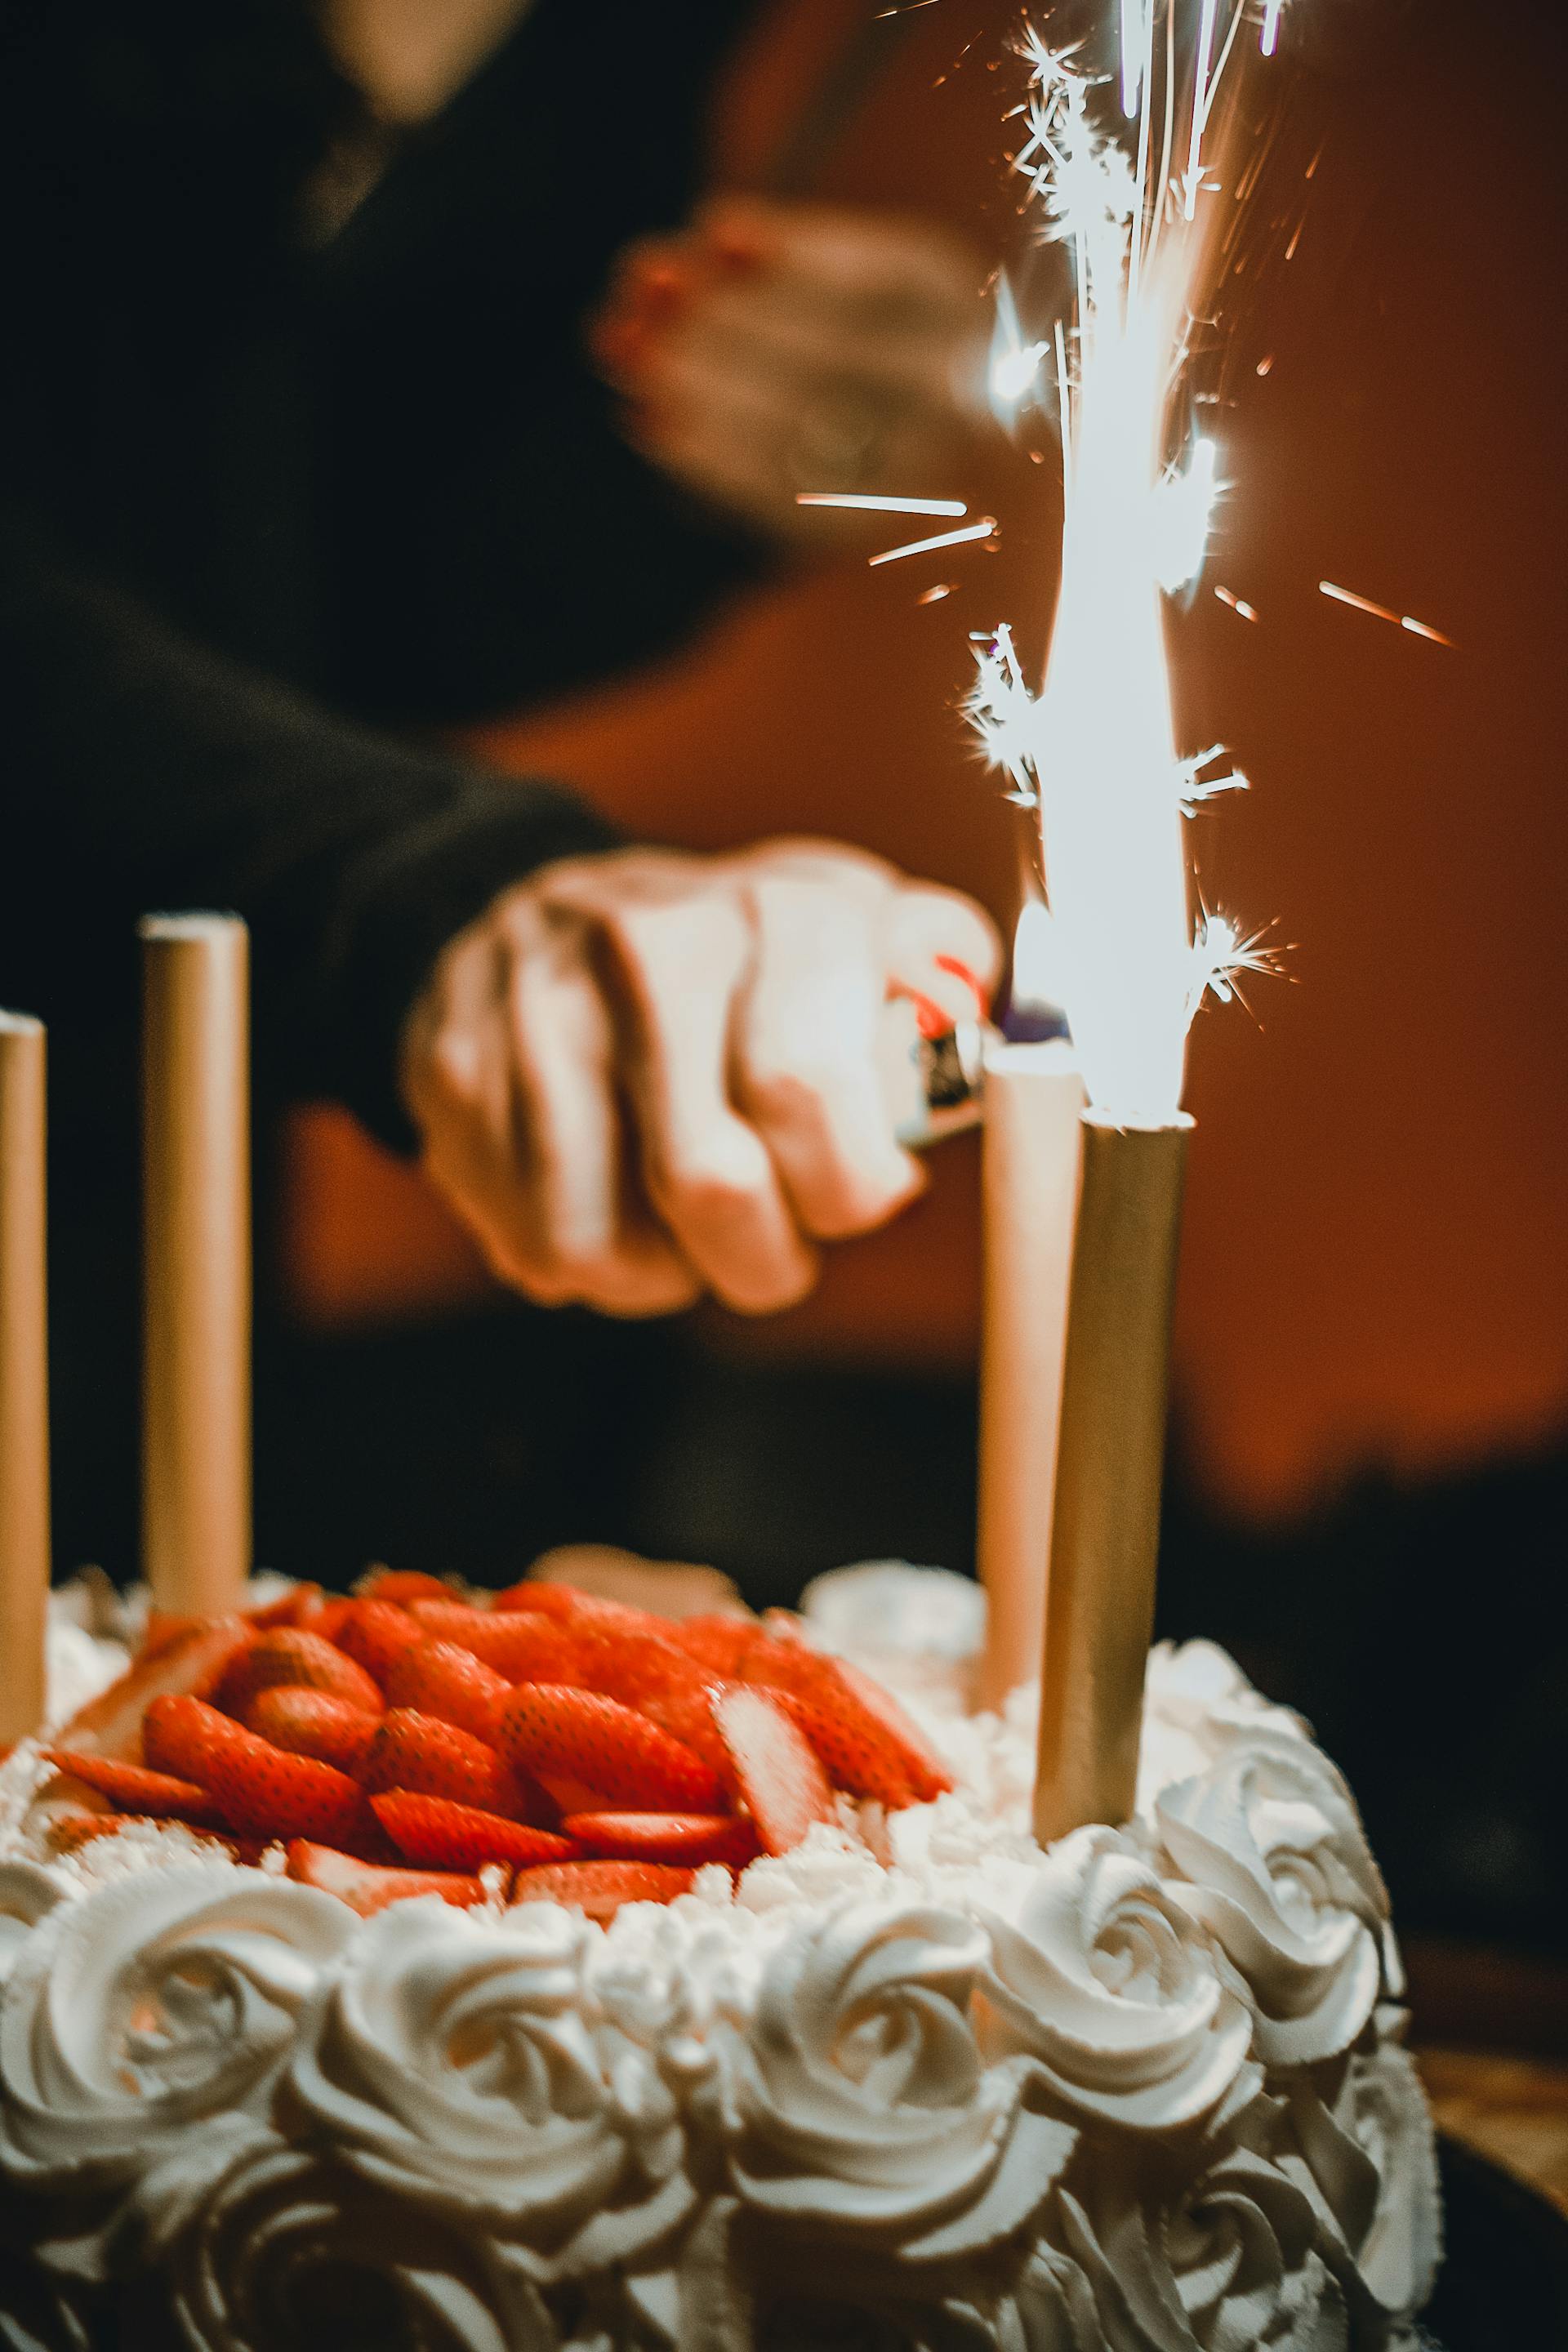 Una persona encendiendo las bengalas de un Pastel | Fuente: Pexels